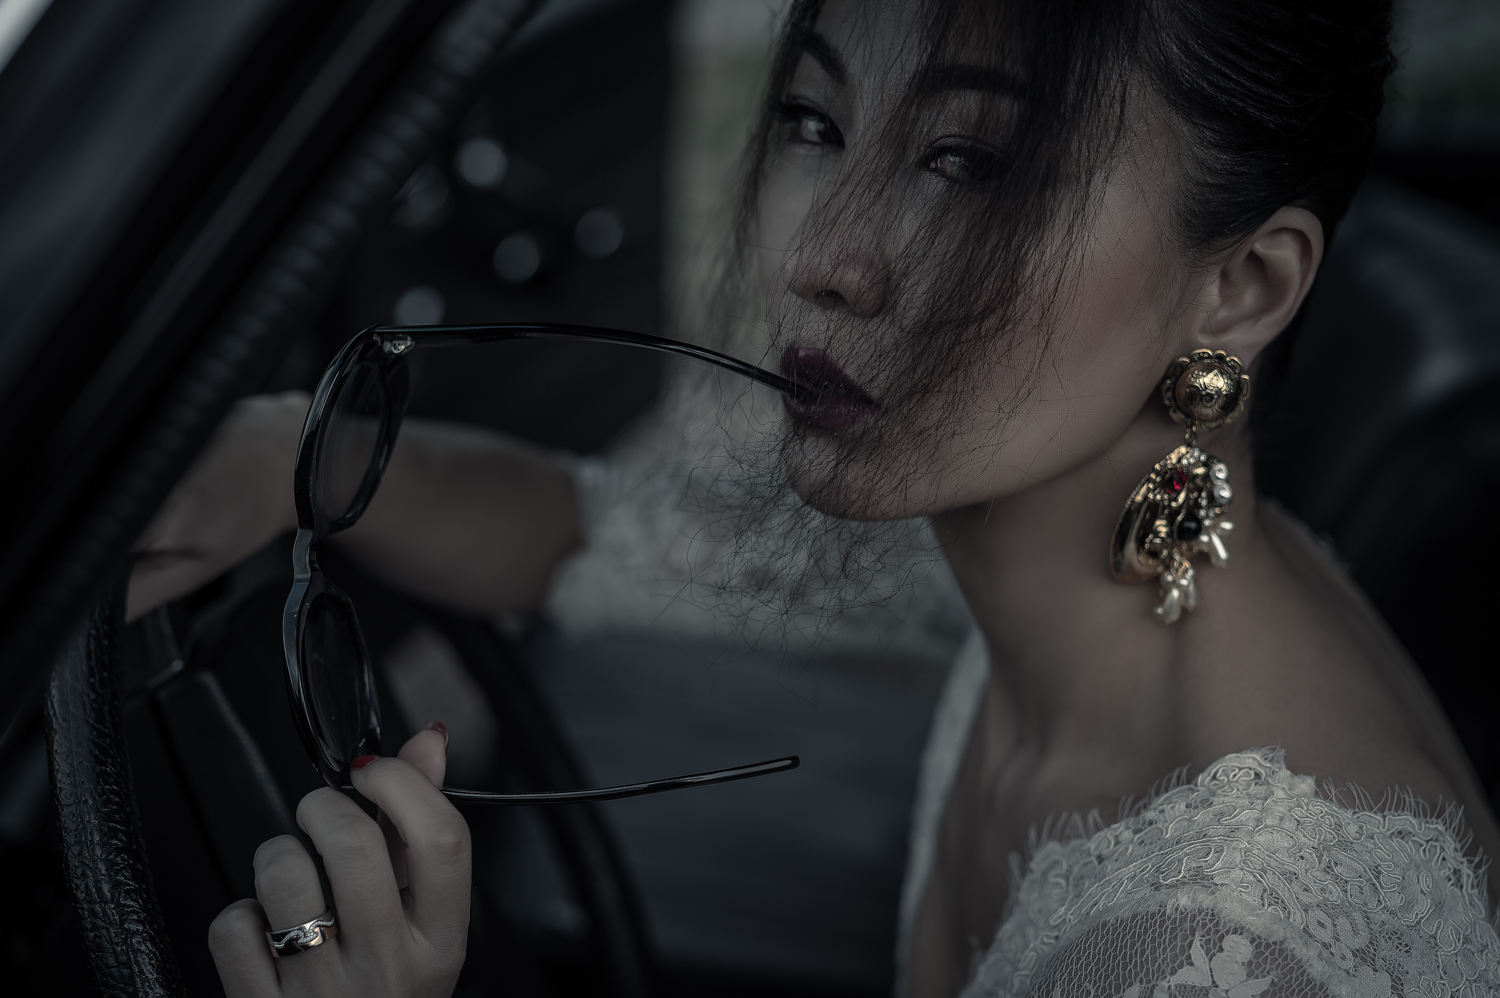 婚紗影像 | 攝影師 Anderson Chien | 婚紗影像 | 自助婚紗 | 婚禮紀實 | 平面攝影 | 婚禮紀錄 | 海外婚紗 | 自主婚紗